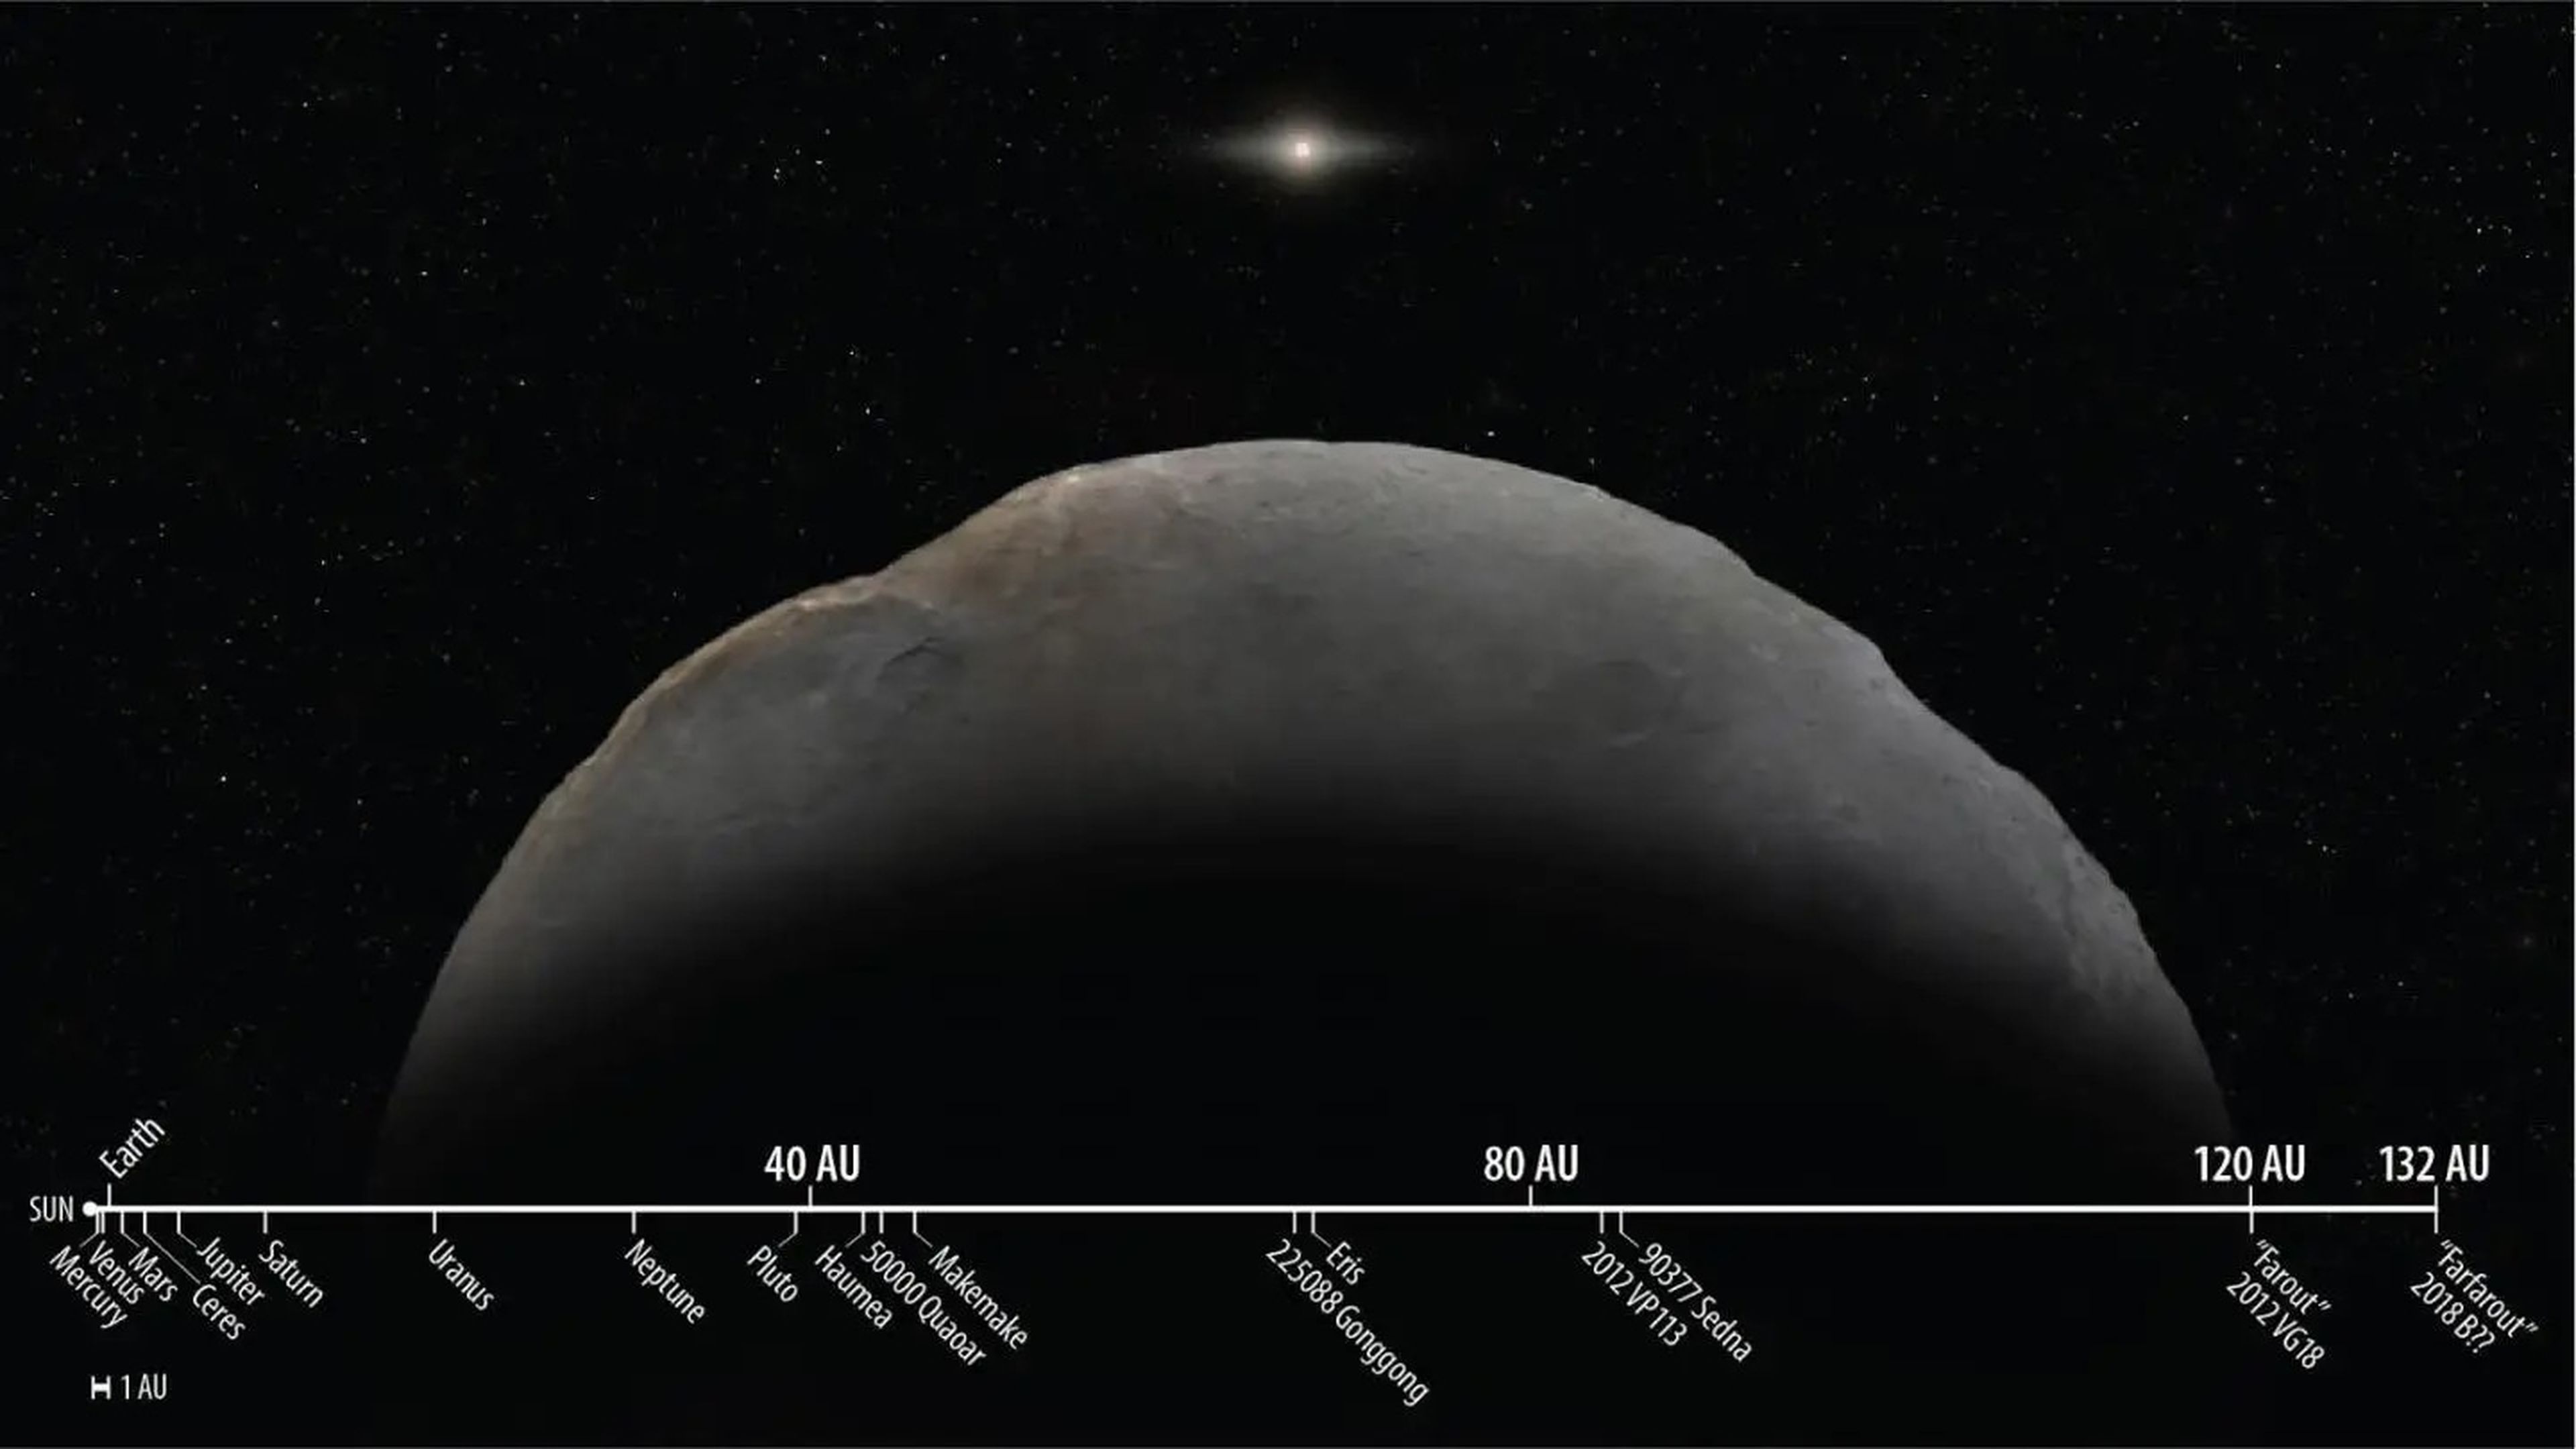 Distancias del sistema solar a escala, mostrando el planetoide recién descubierto, Farfarout, en comparación con otros objetos conocidos del sistema solar.